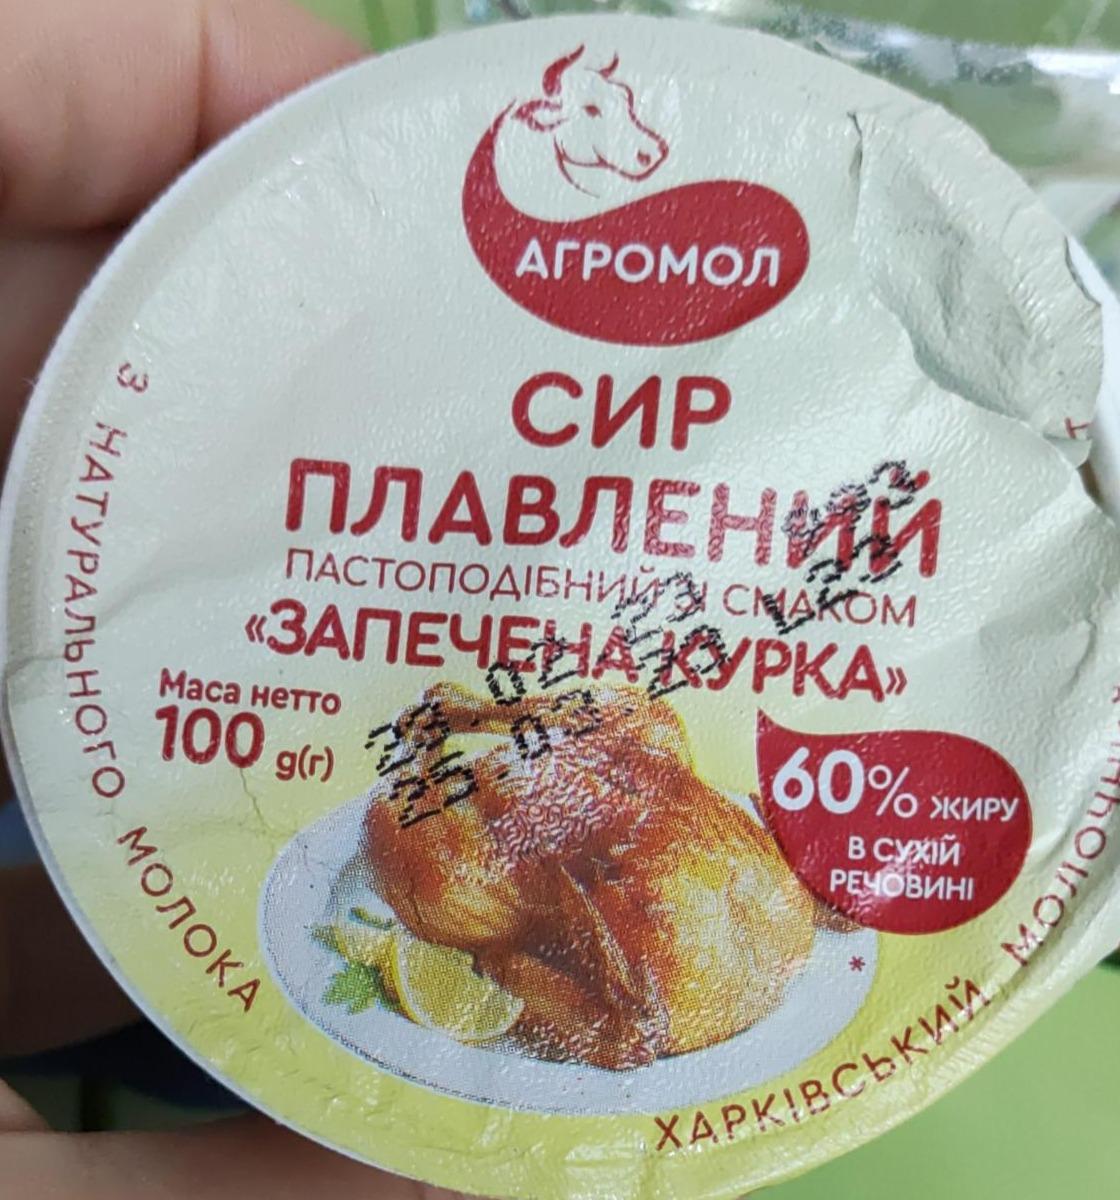 Фото - Сыр плавленый со вкусом Запеченная курица Агромол